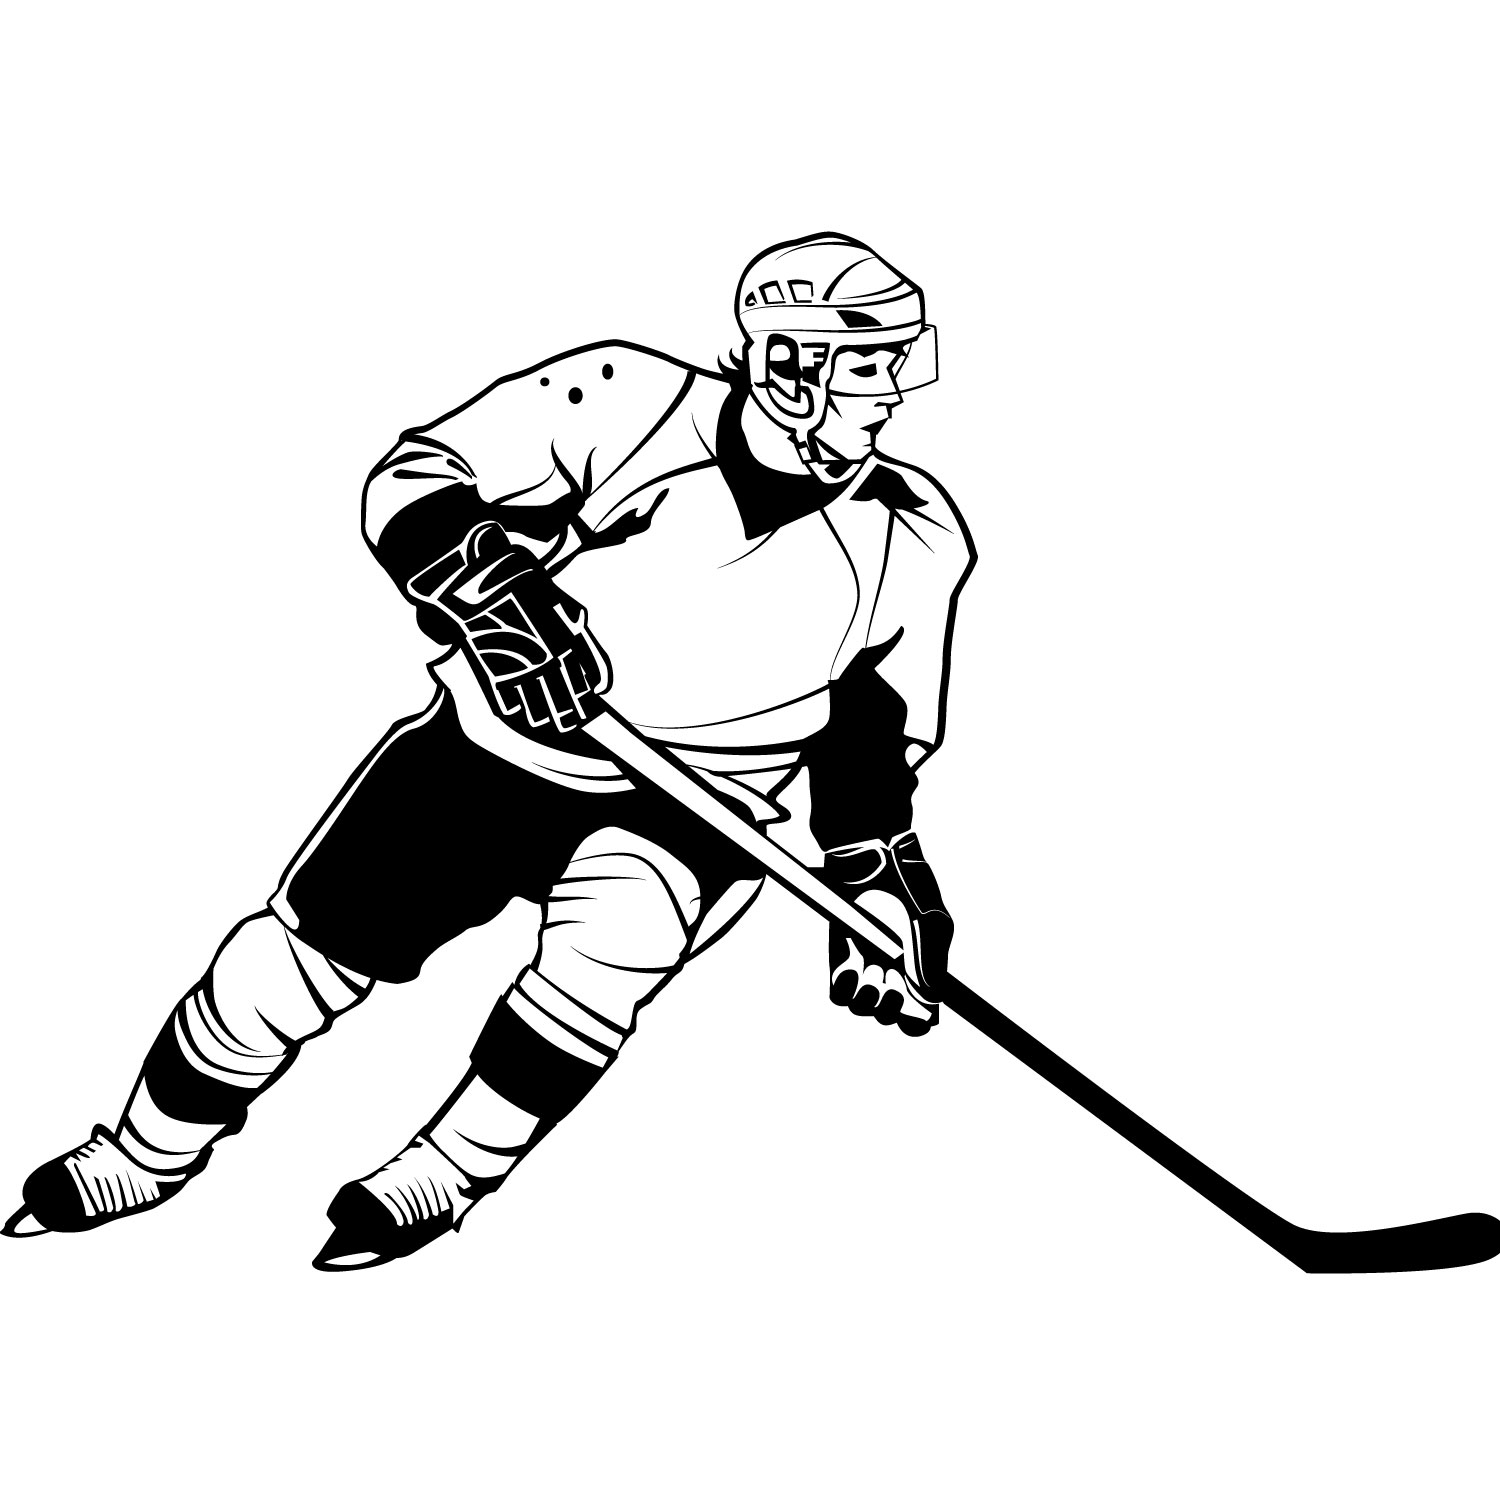 Free hockey clipart image